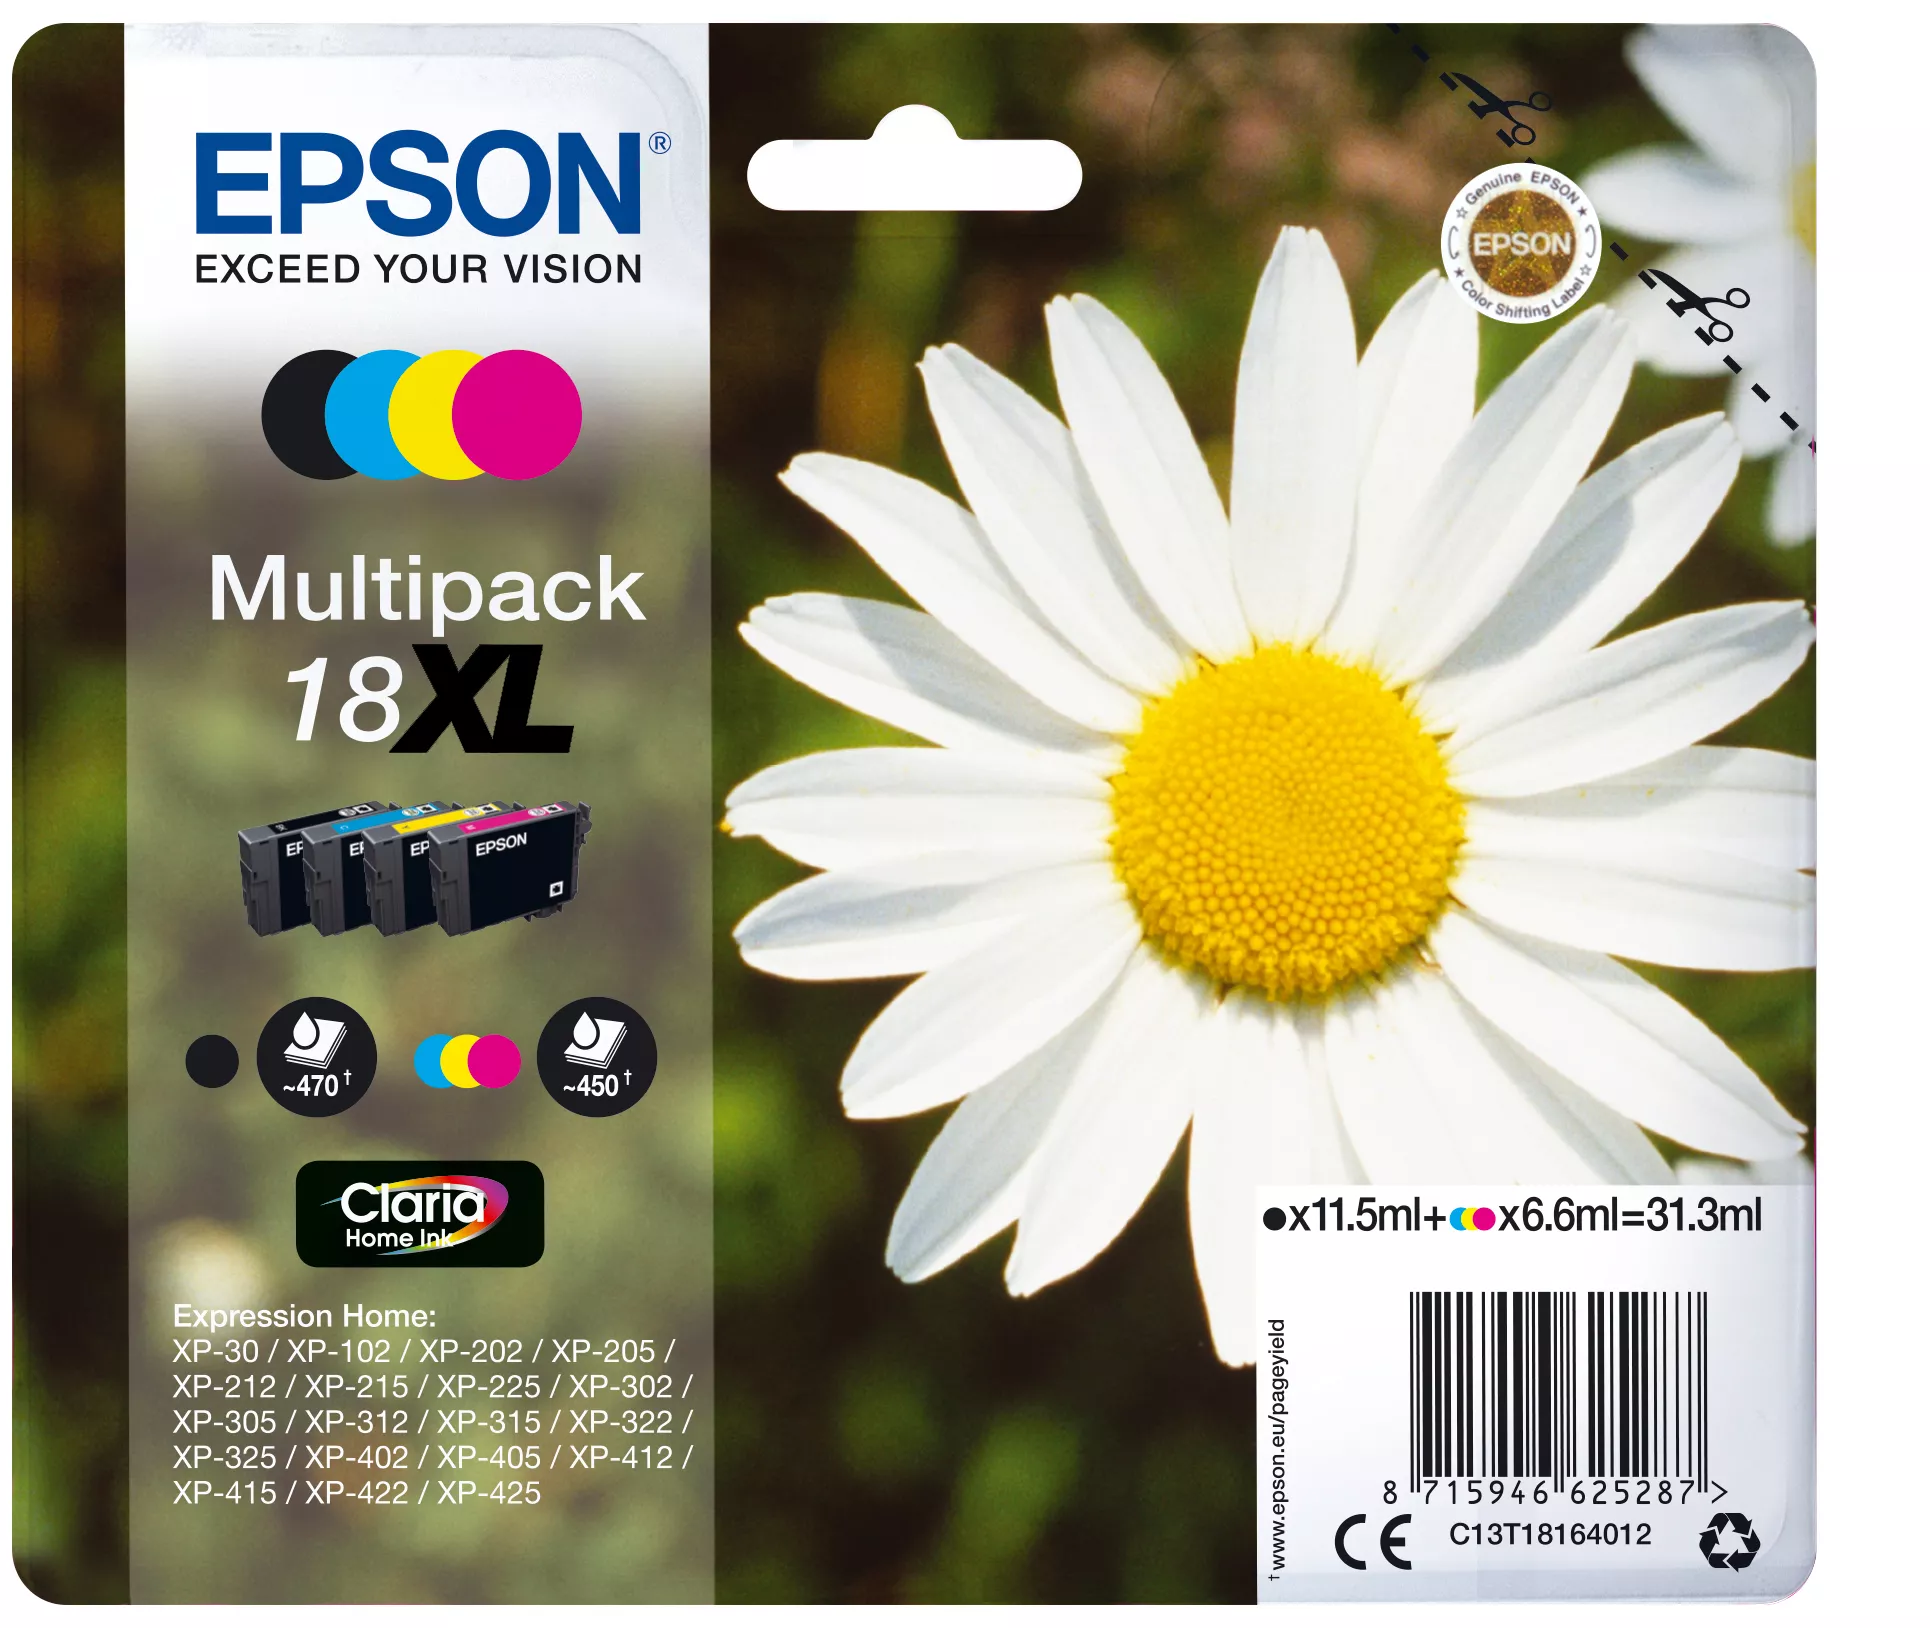 Achat EPSON 18XL cartouche encre noir et tricolore haute capacité et autres produits de la marque Epson